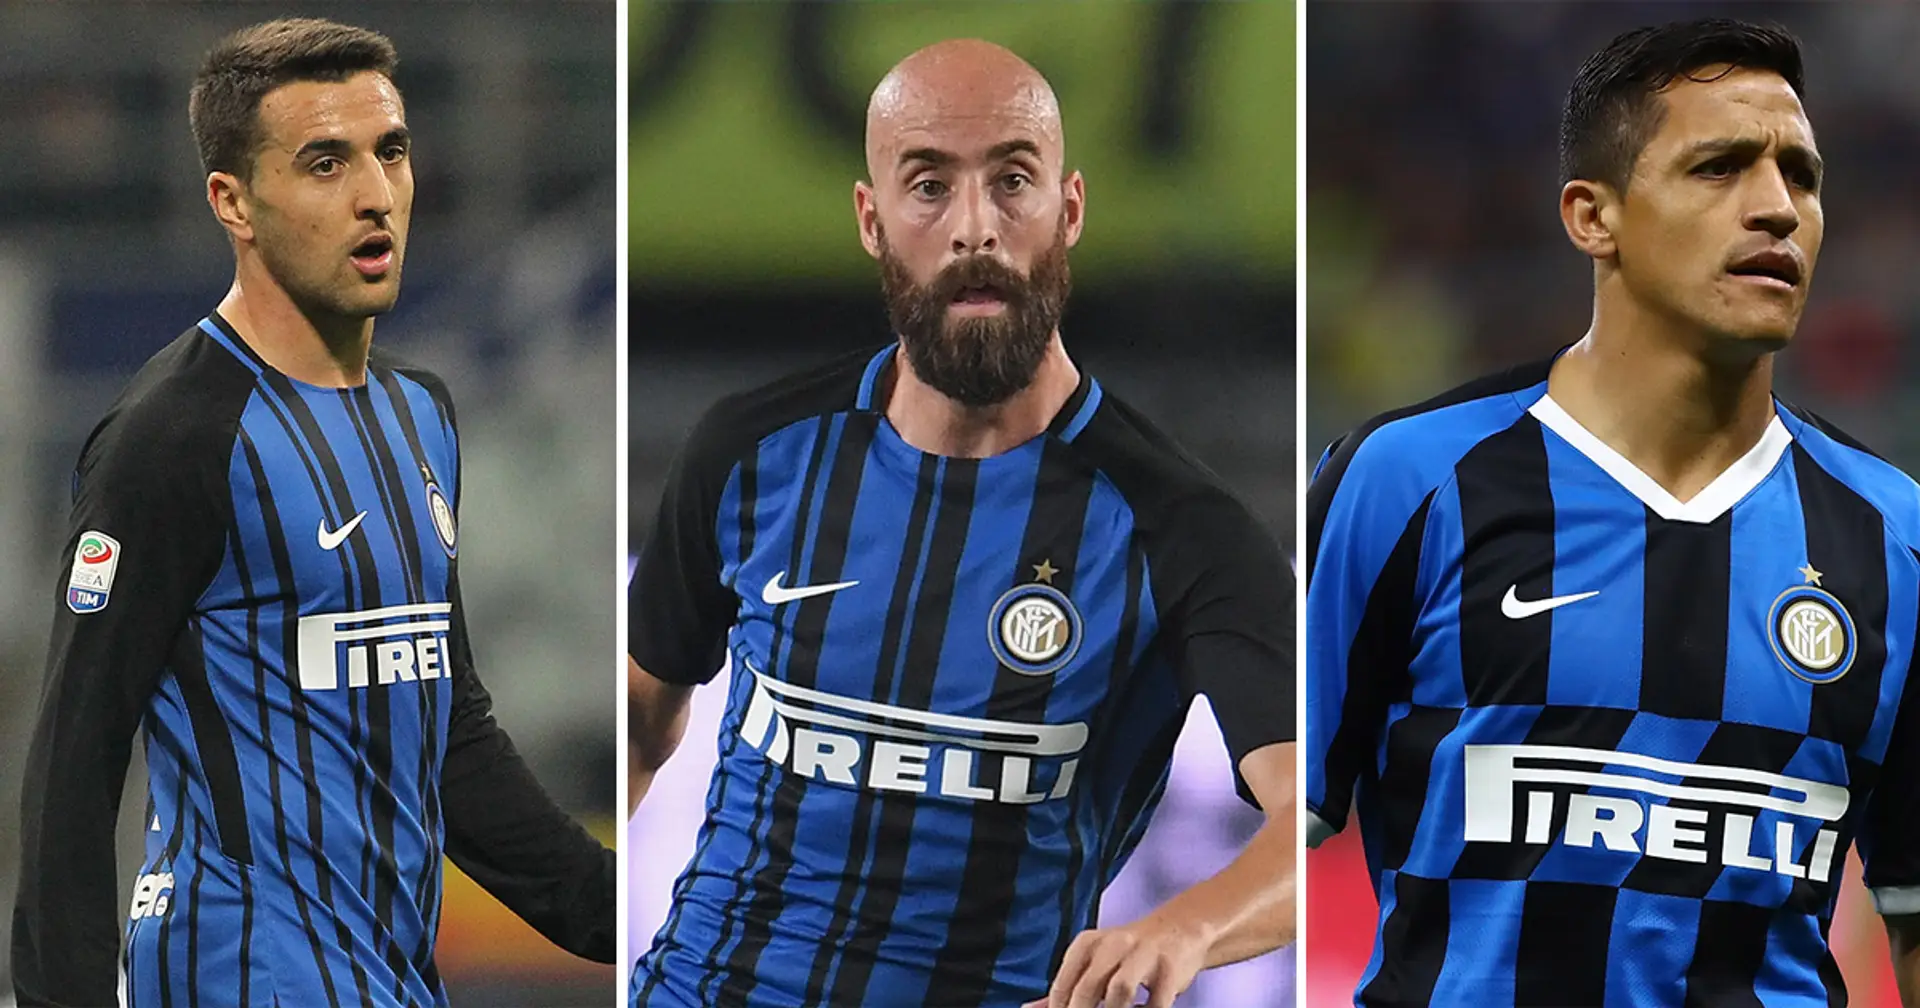 Mercato Inter: almeno 5 i calciatori che potrebbero salutare Milano